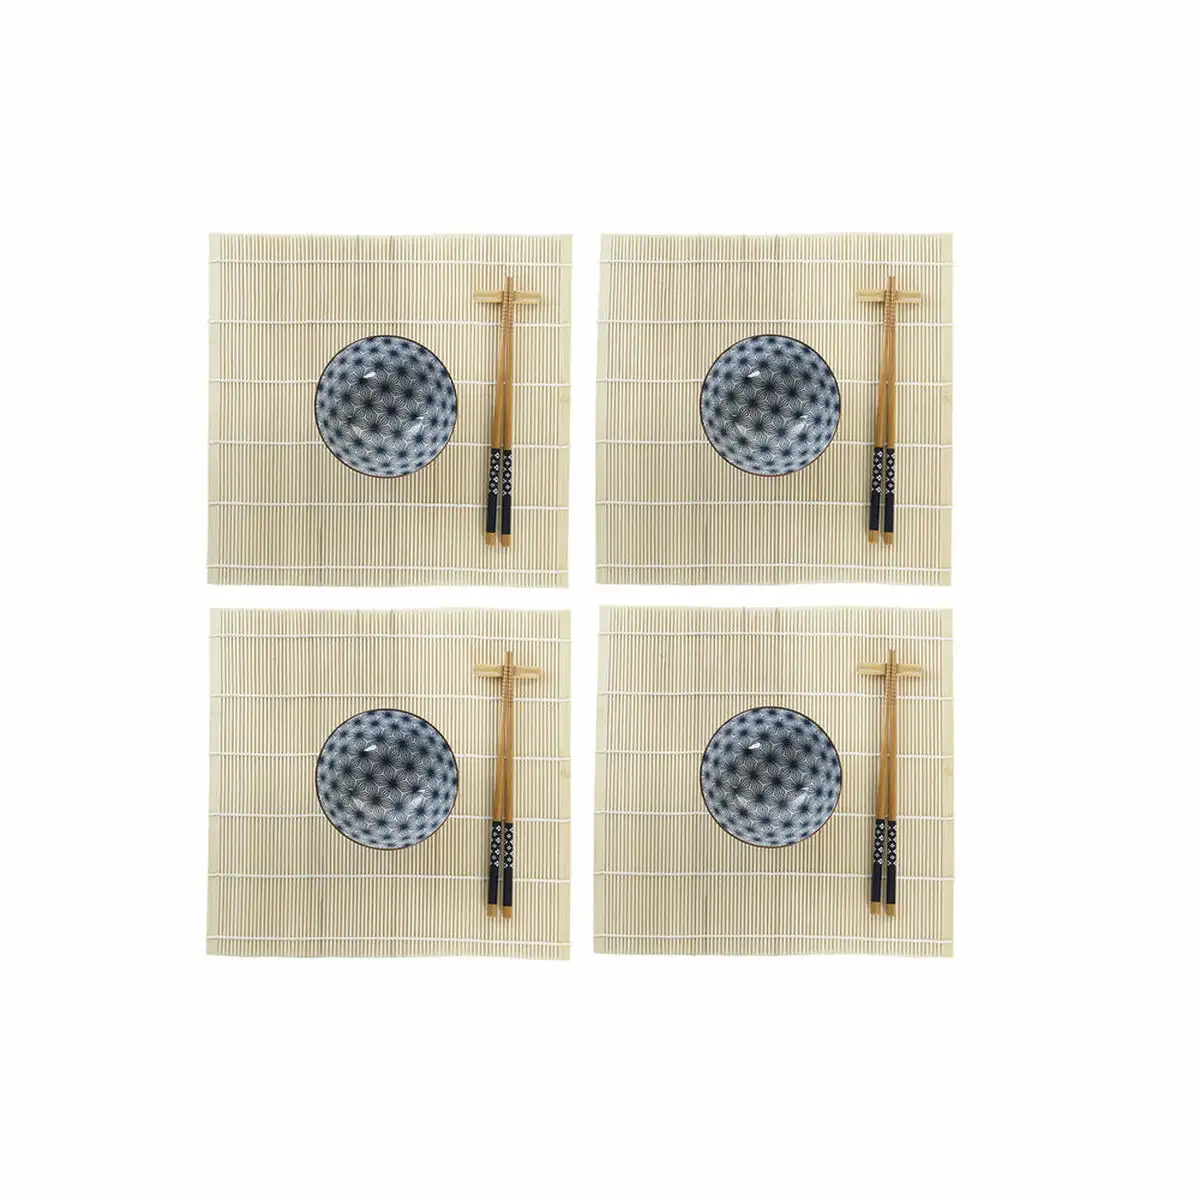 Set de sushi dkd home decor 14 5 x 14 5 x 31 cm bleu gres oriental 16 pieces _9632. DIAYTAR SENEGAL - L'Art de Vivre avec Authenticité. Explorez notre gamme de produits artisanaux et découvrez des articles qui apportent une touche unique à votre vie.